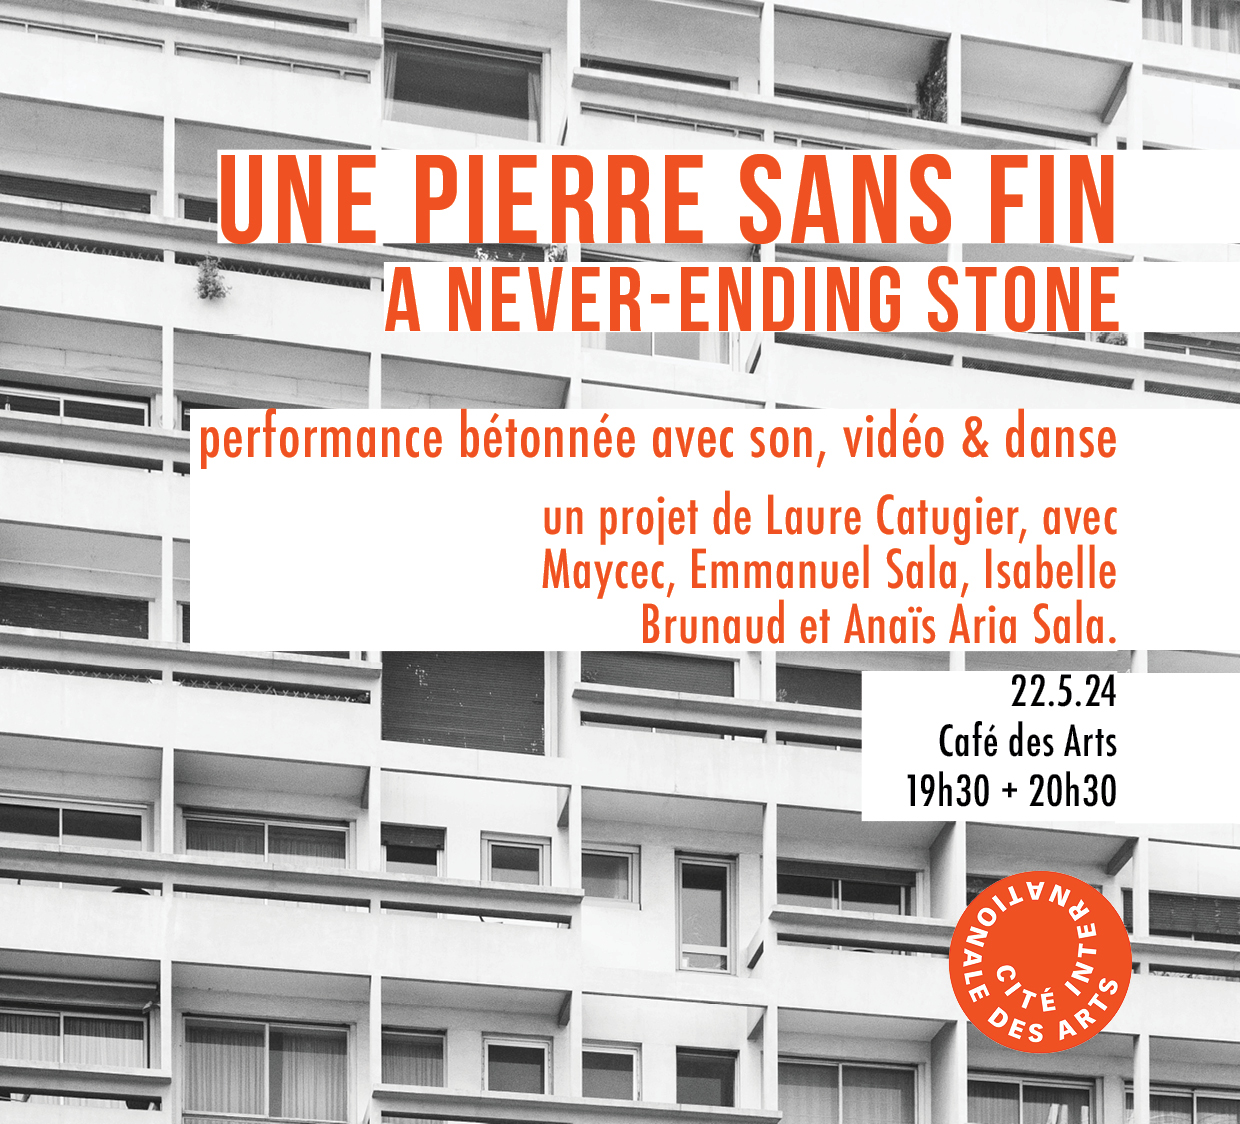 Flyer performance de Laure Catugier, a never ending stone